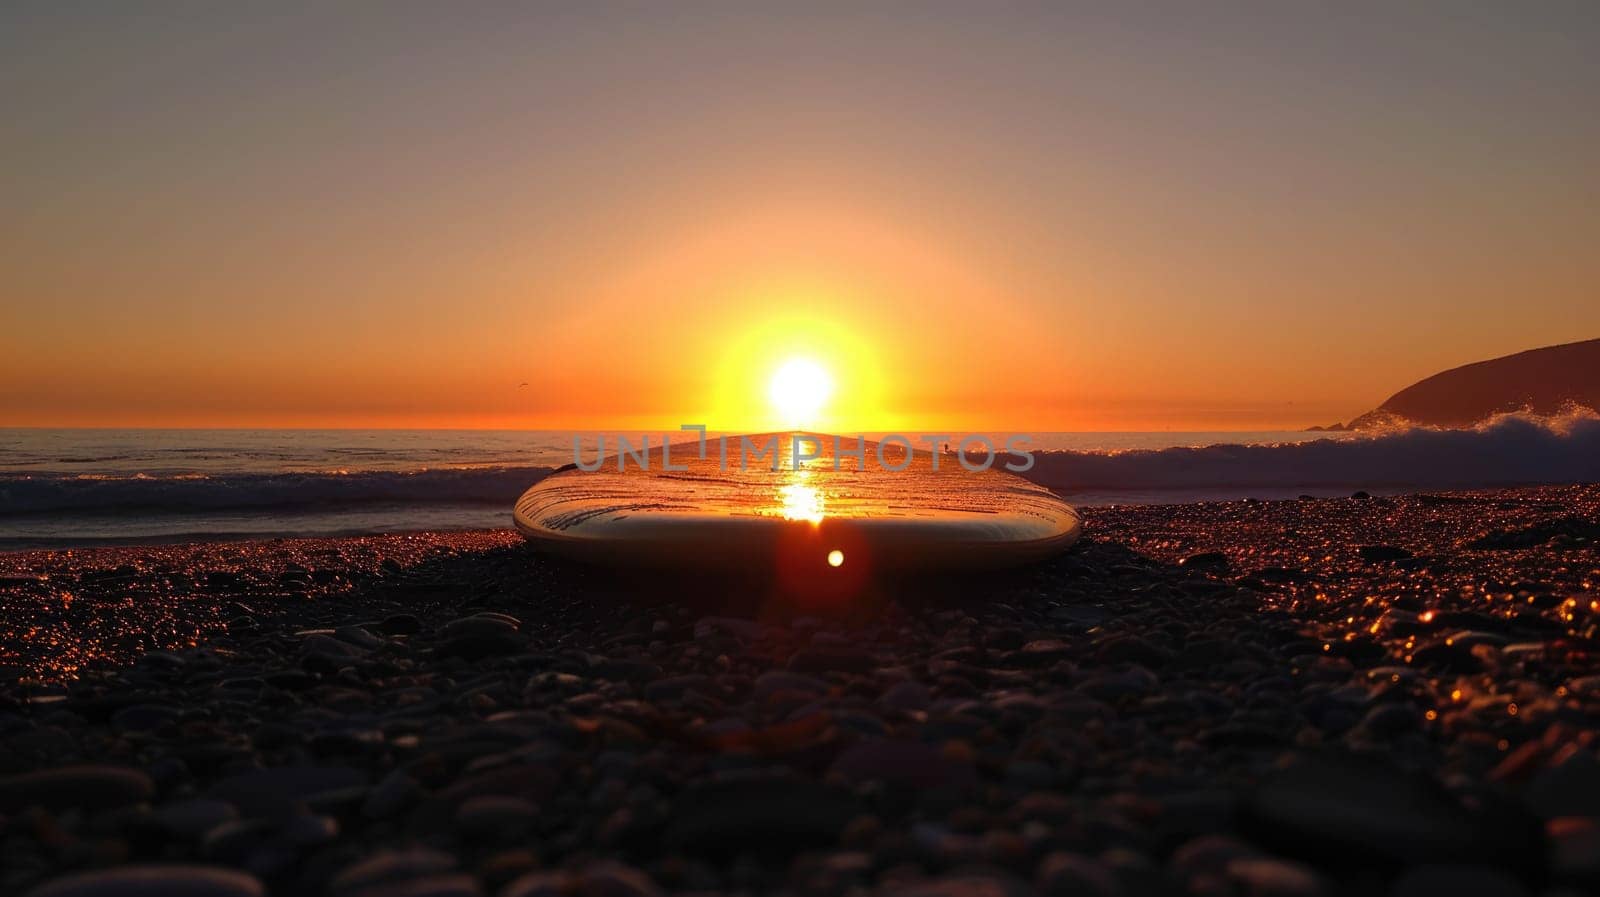 Surfboard and rising sun, coast beach at sunset. AI